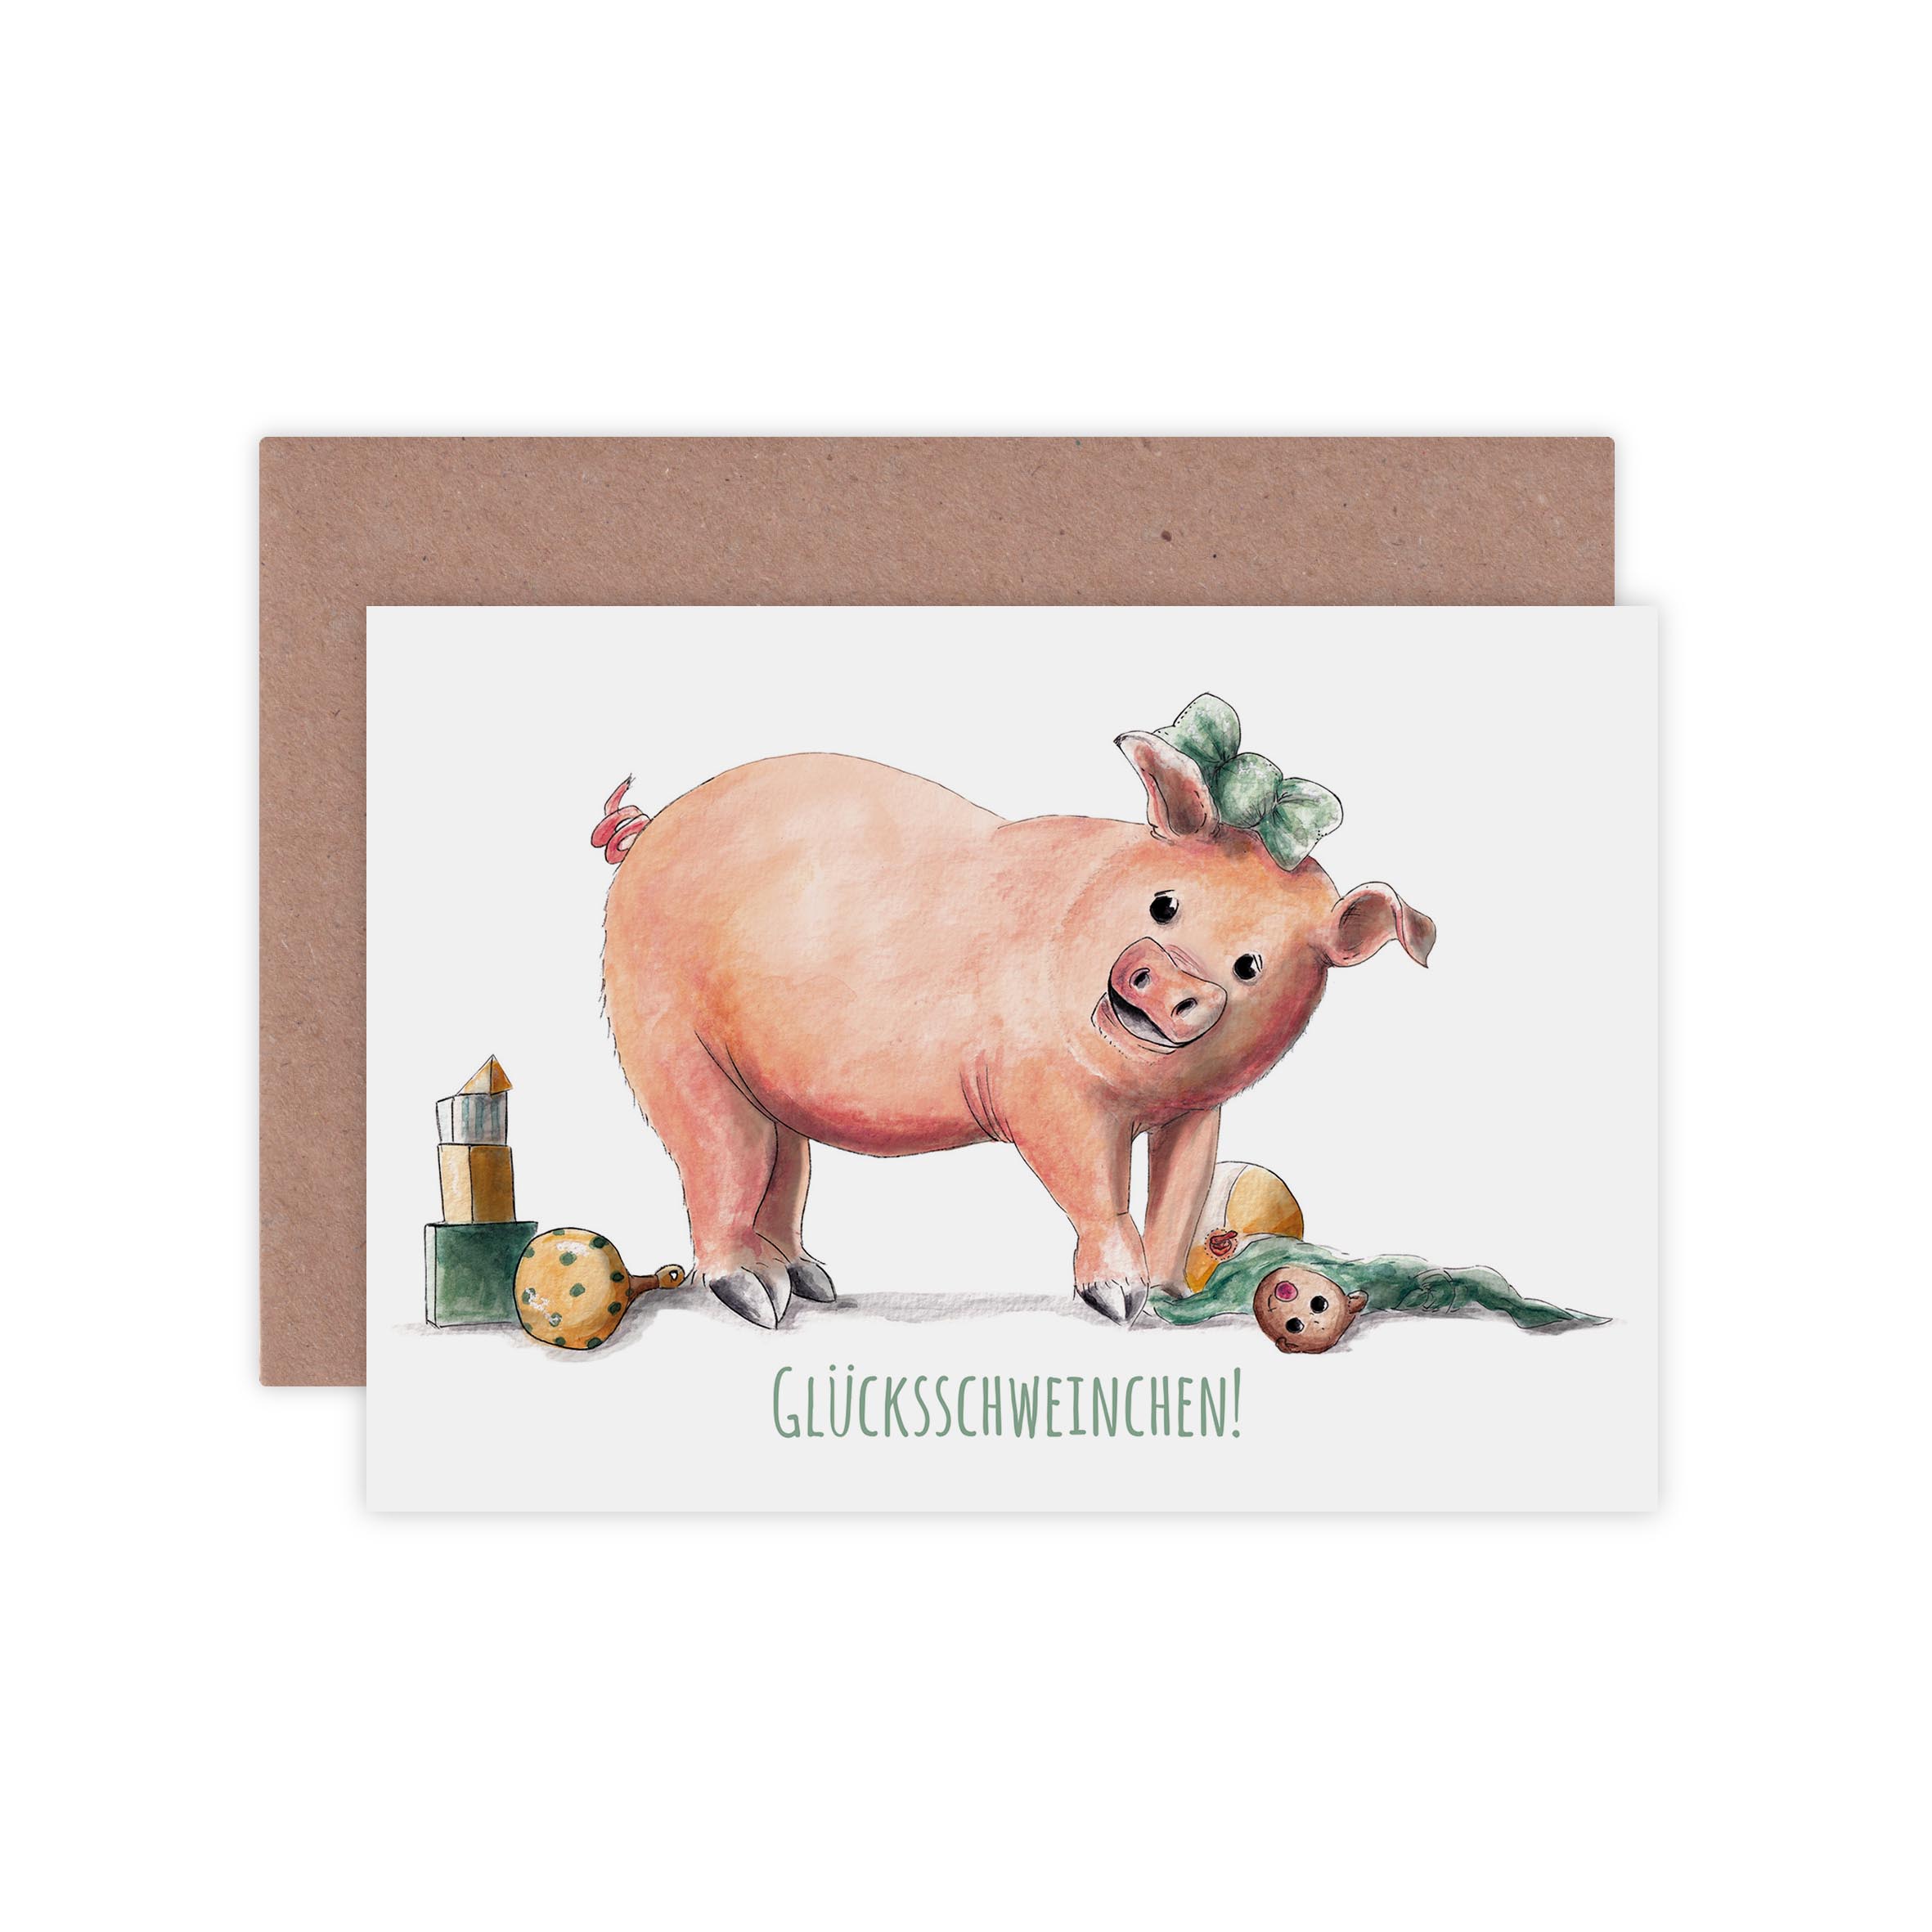 Grusskarte sonstiges gluecksschweinchen freisteller